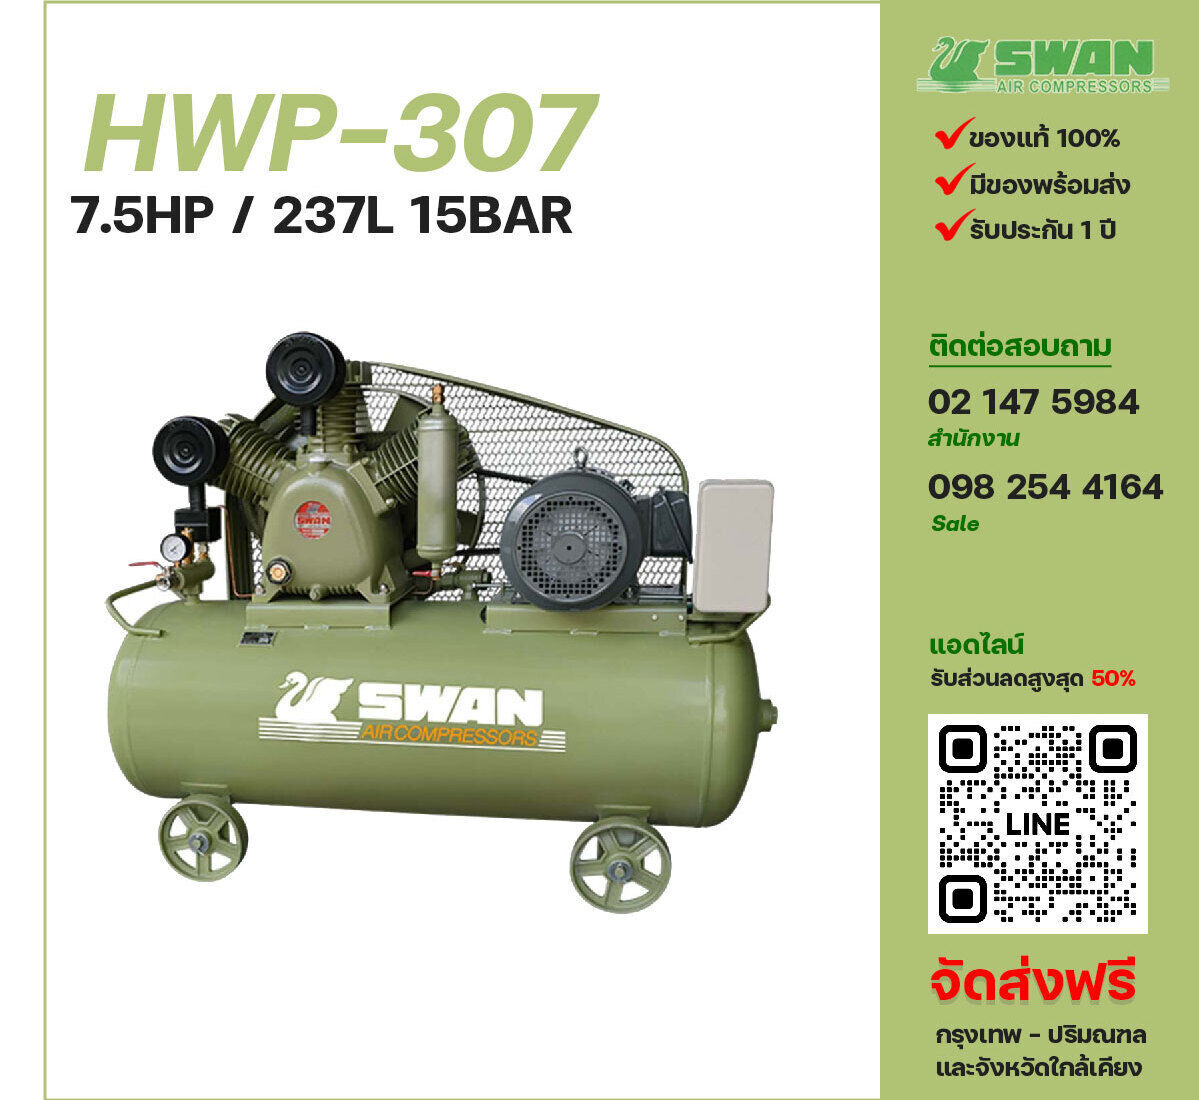 ปั๊มลมสวอนแรงดันสูง SWAN Two-Stage HWP-307 380V ปั๊มลมลูกสูบ ขนาด 3 สูบ 7.5 แรงม้า 237 ลิตร FUSHENG พร้อมมอเตอร์ ไฟ 380V ส่งฟรี กรุงเทพฯ-ปริมณฑล รับประกัน 1 ปี